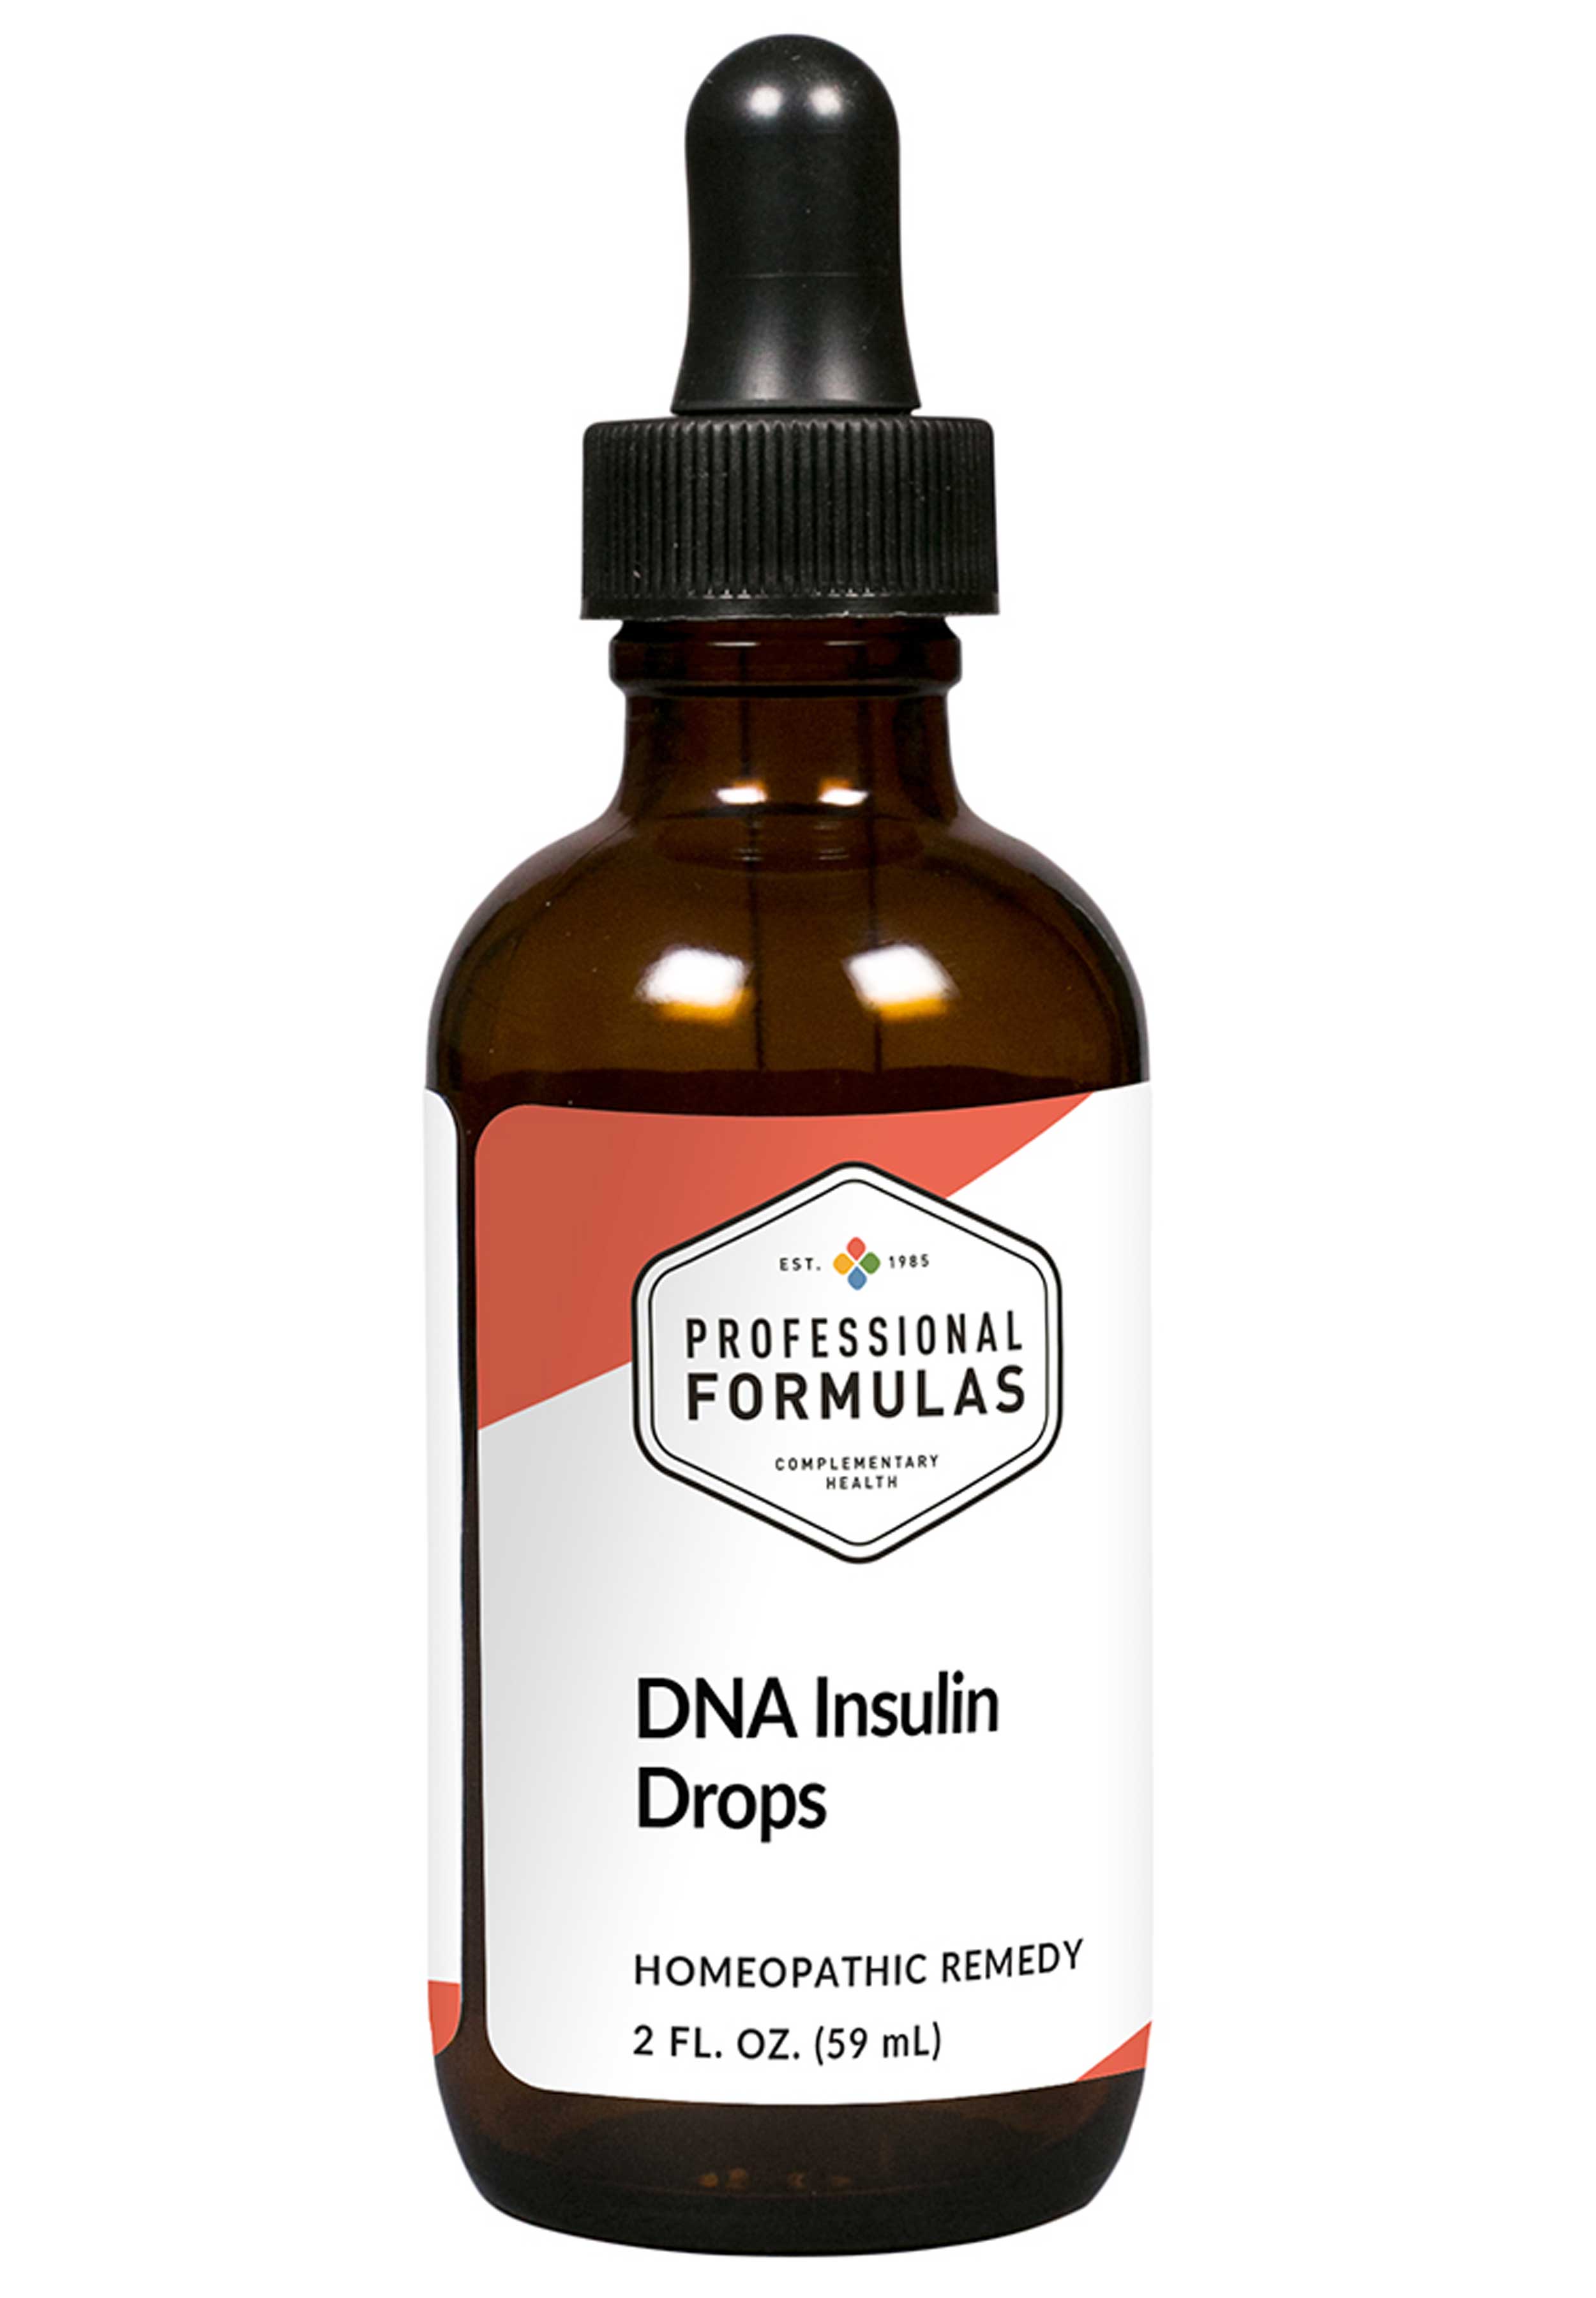 Professional Formulas DNA Insulin Drops